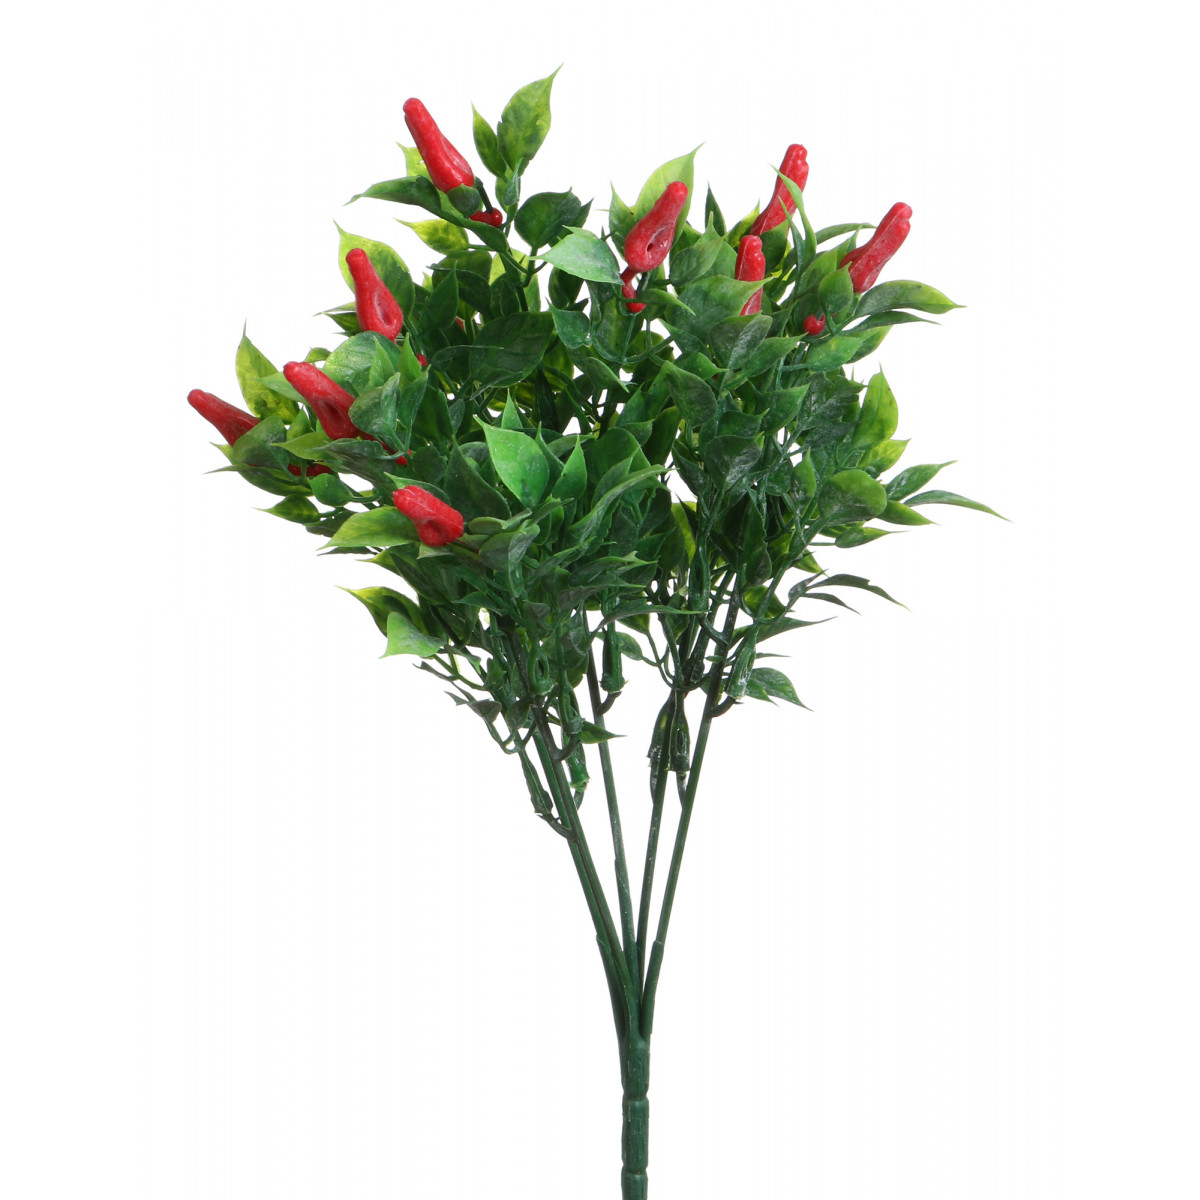 Искусственное растение Blythe  (29 см), размер 29 см, цвет зеленый arm302331 Искусственное растение Blythe  (29 см) - фото 1